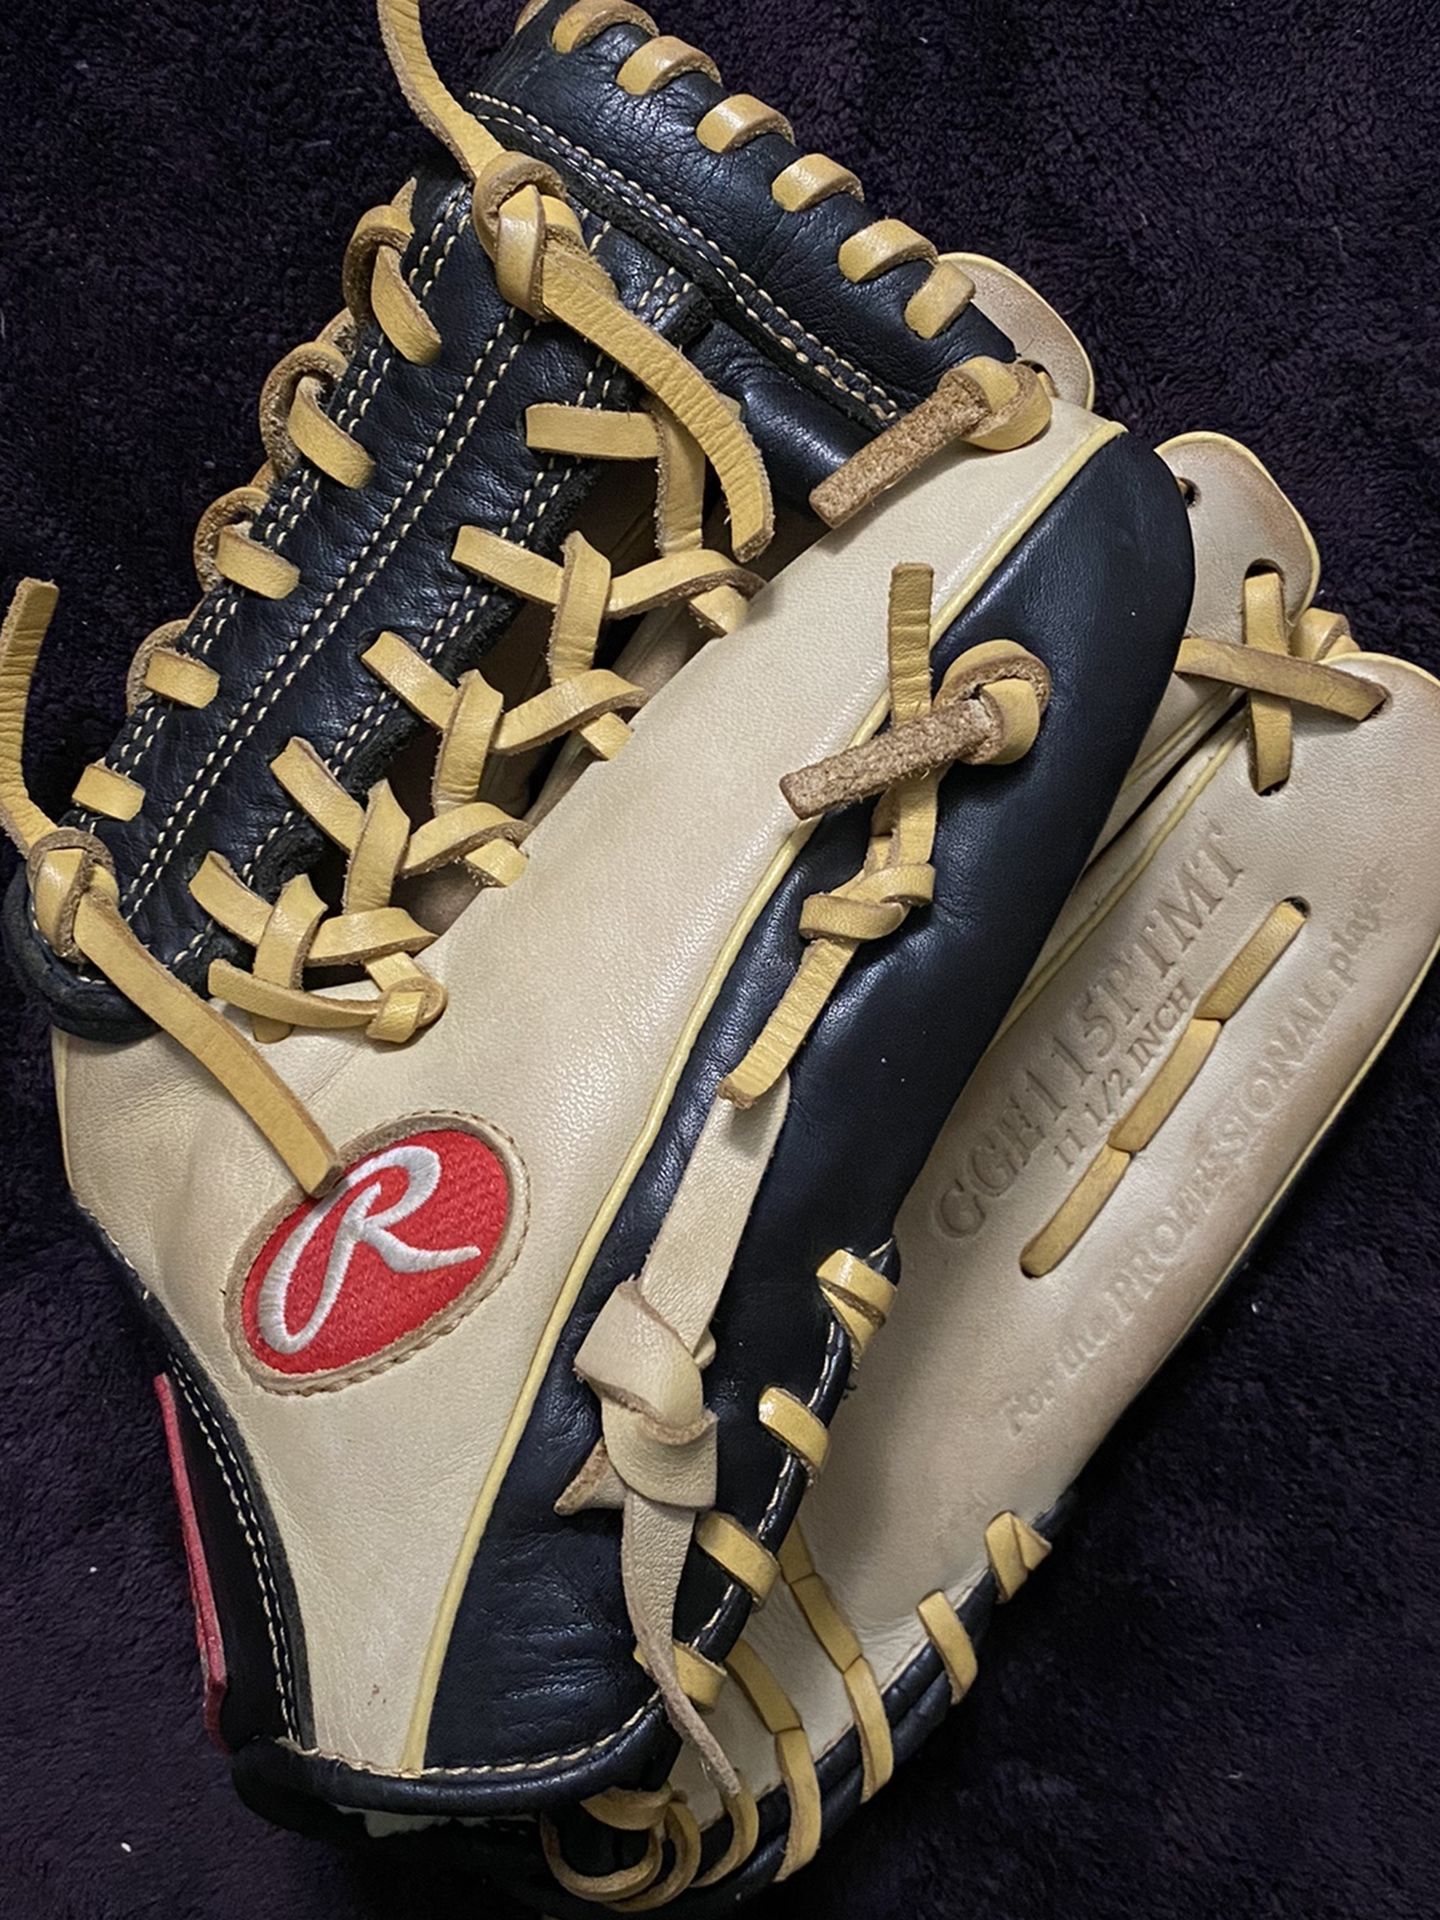 Rawlings Gold Glove Elite Baseball Glove